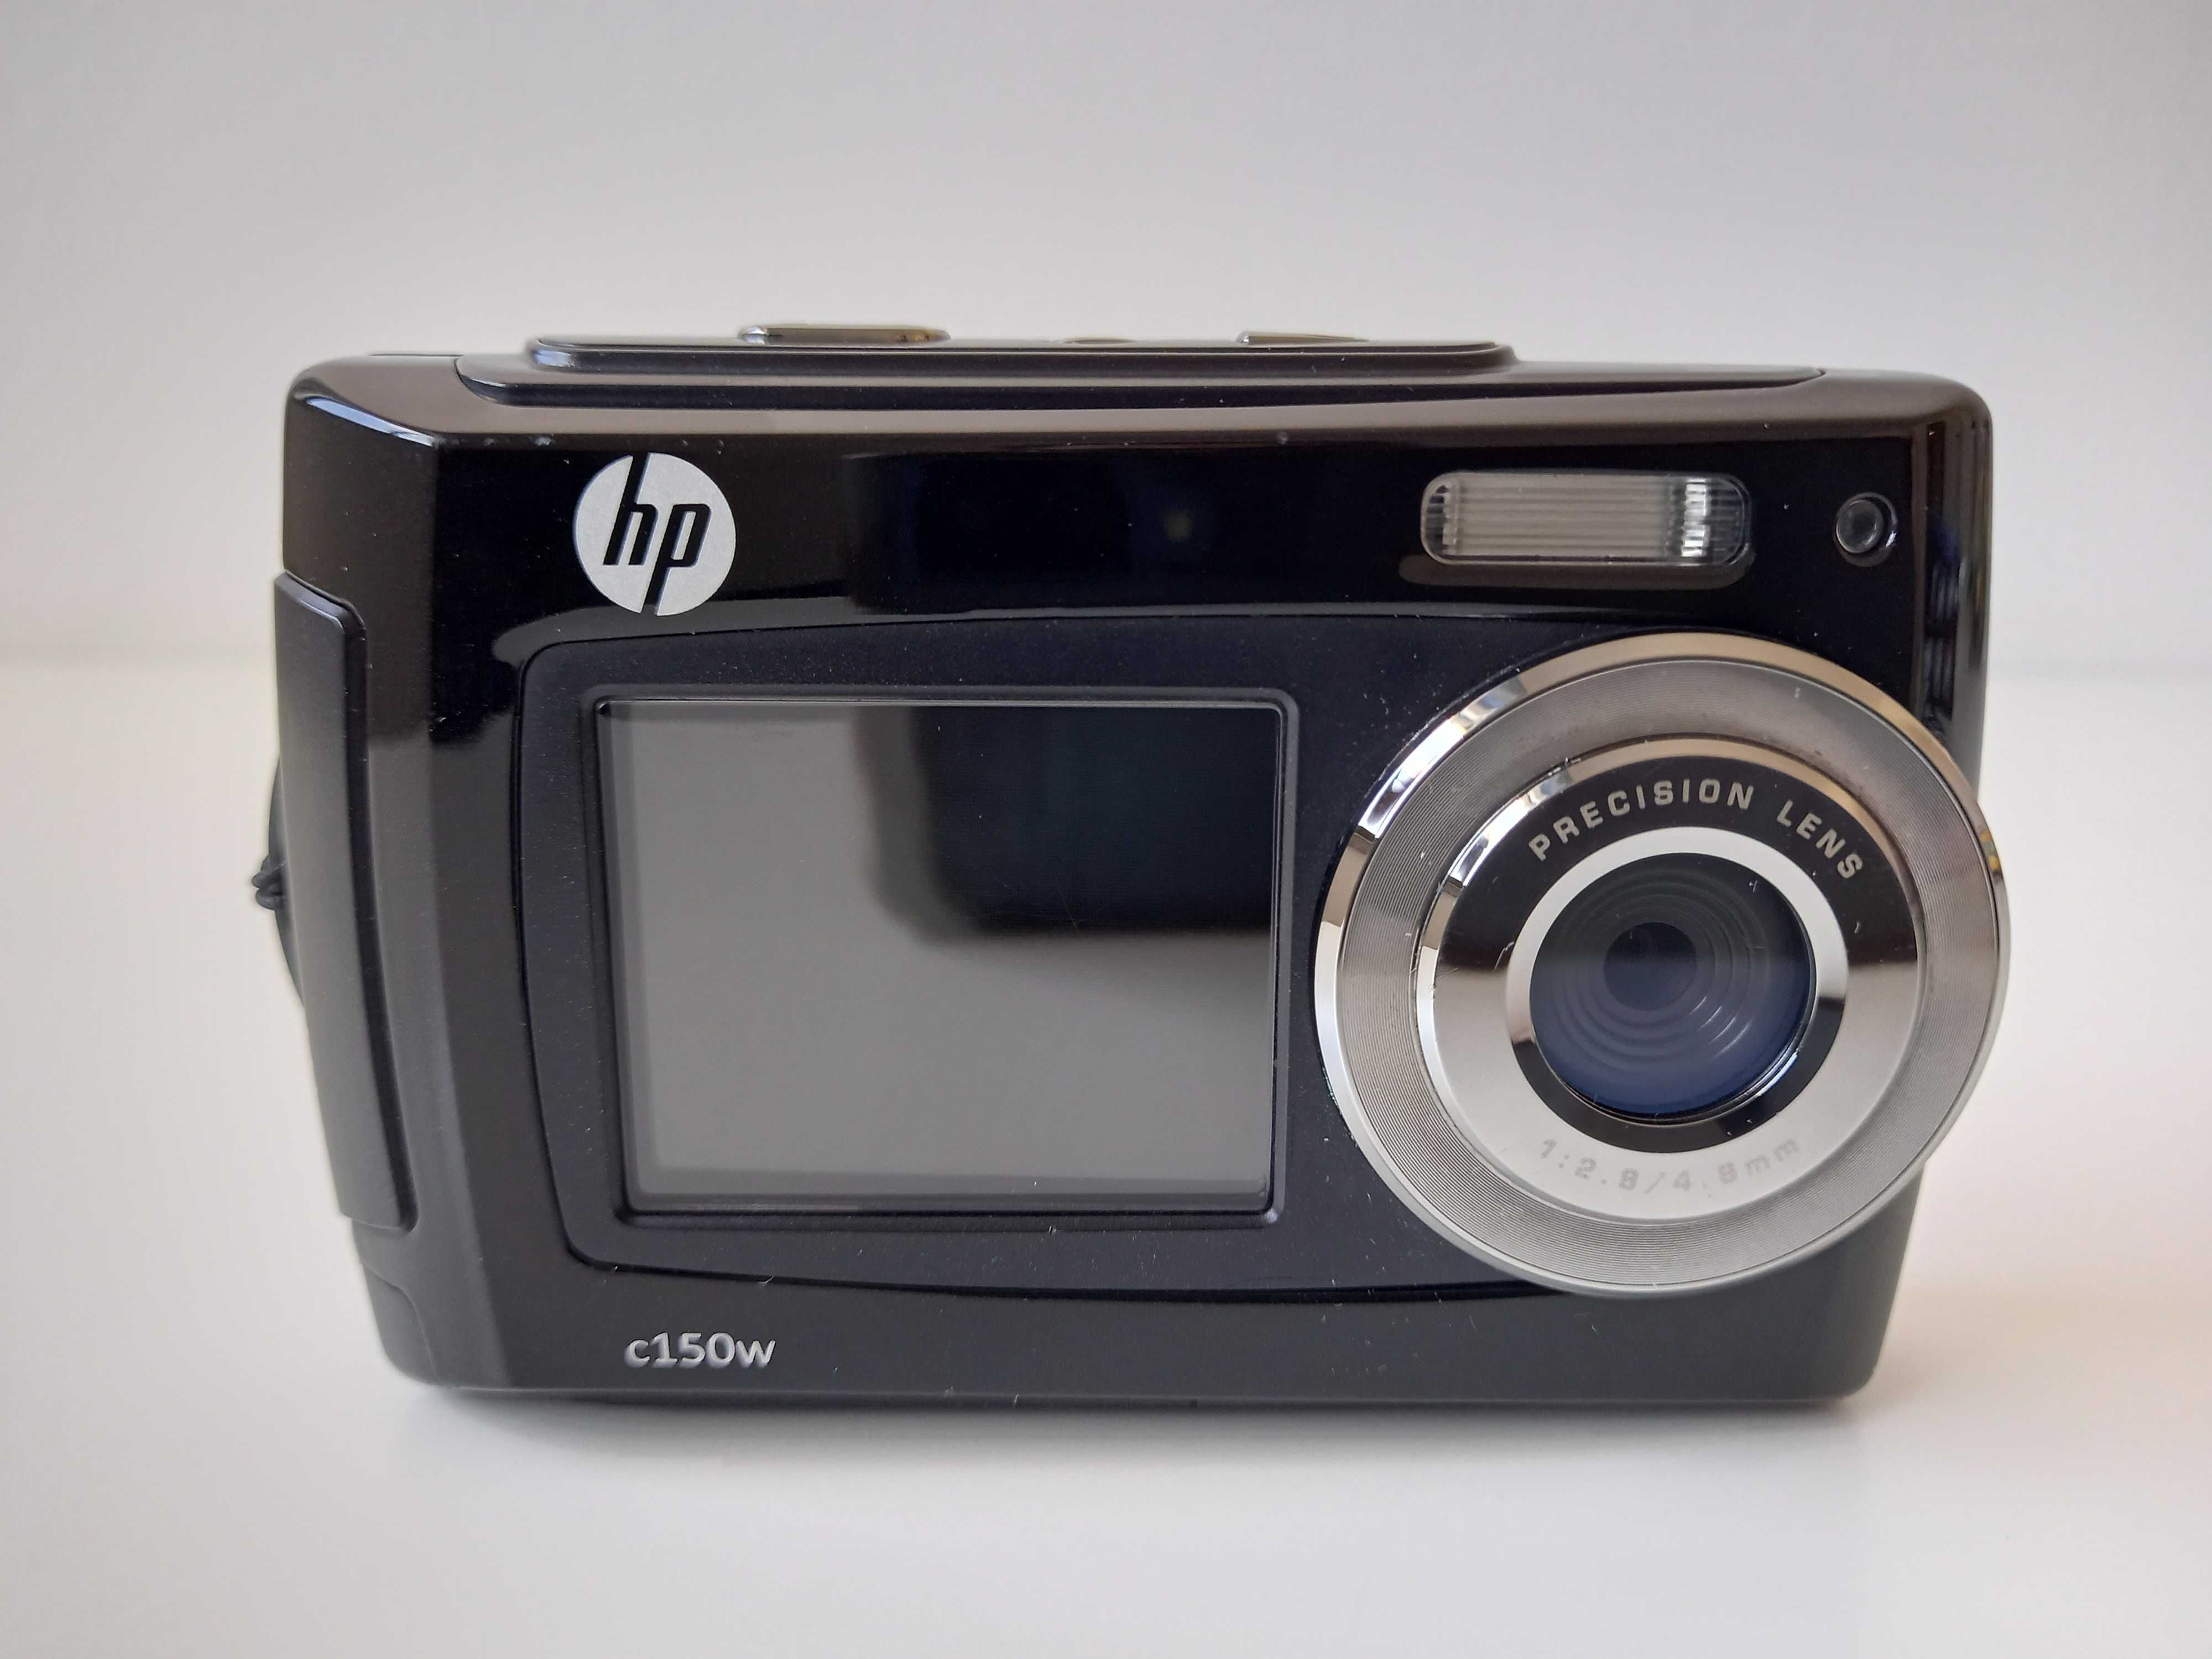 HP Máquina Fotográfica Digital mod. c 150w à prova de água